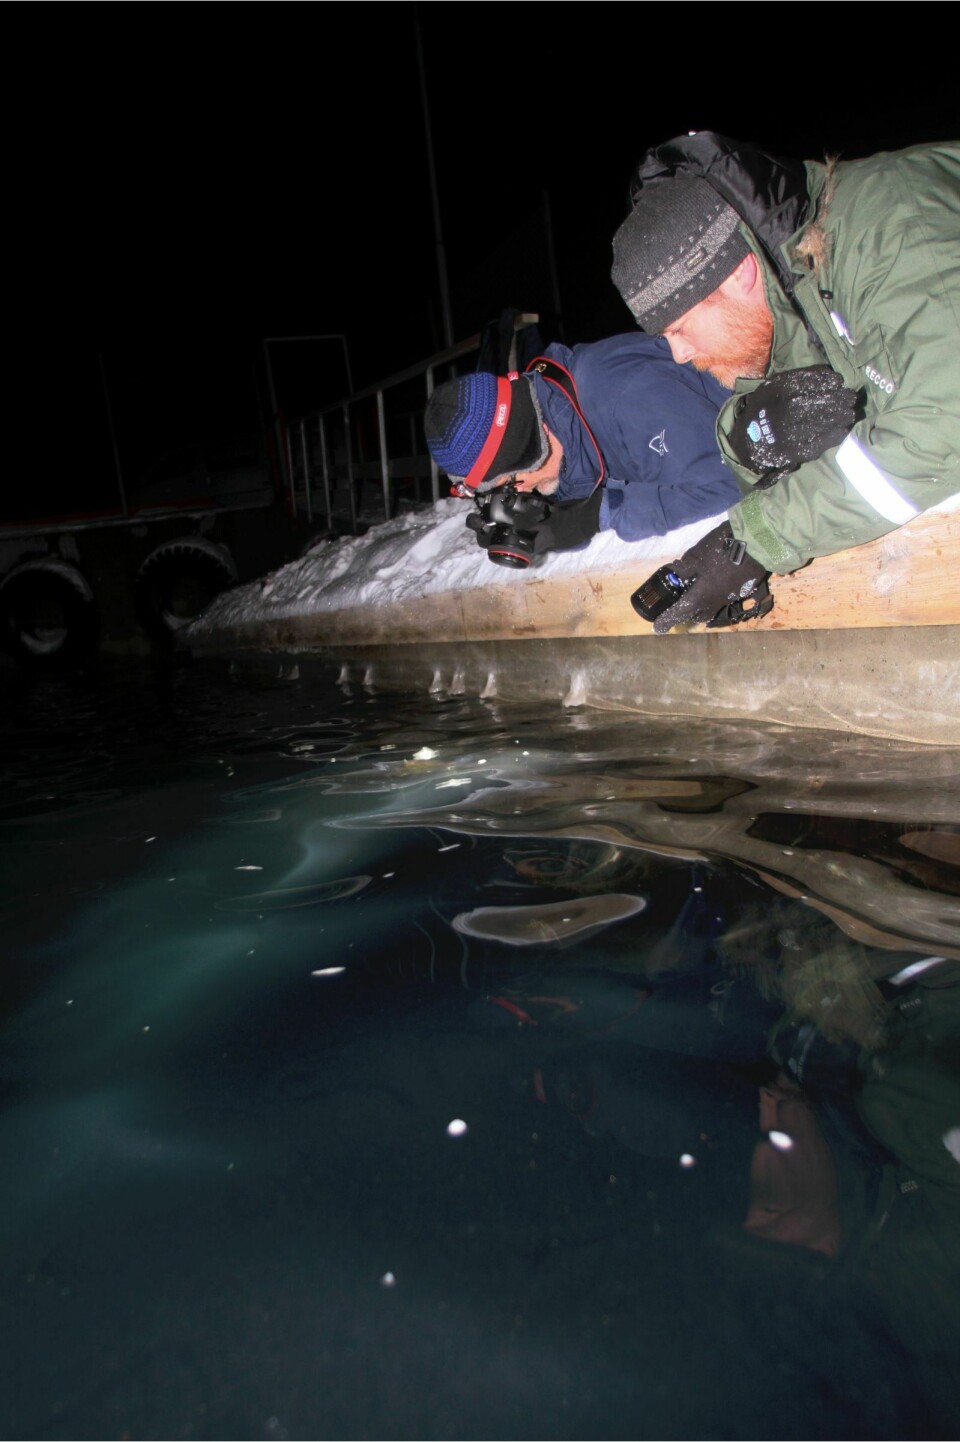 Artikkelforfatterne på magen på brygga i Ny-Ålesund i Januar 2017 utstyrt med lommelykt og kamera for å studere hvordan dyreplankton reagerer på lys.